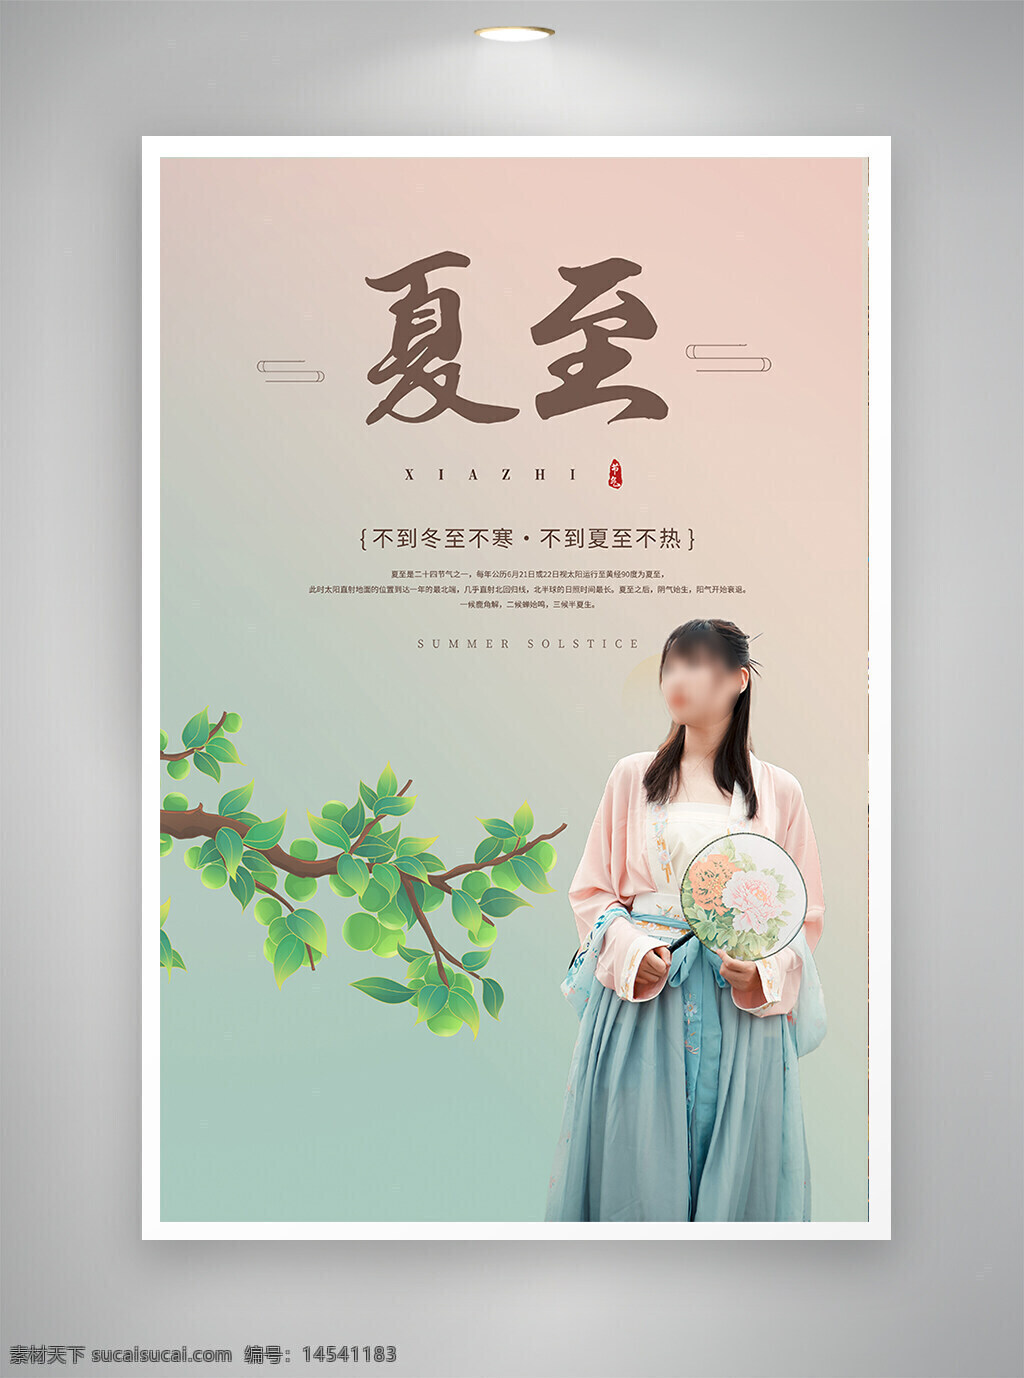 中国风海报 古风海报 促销海报 节日海报 夏至海报